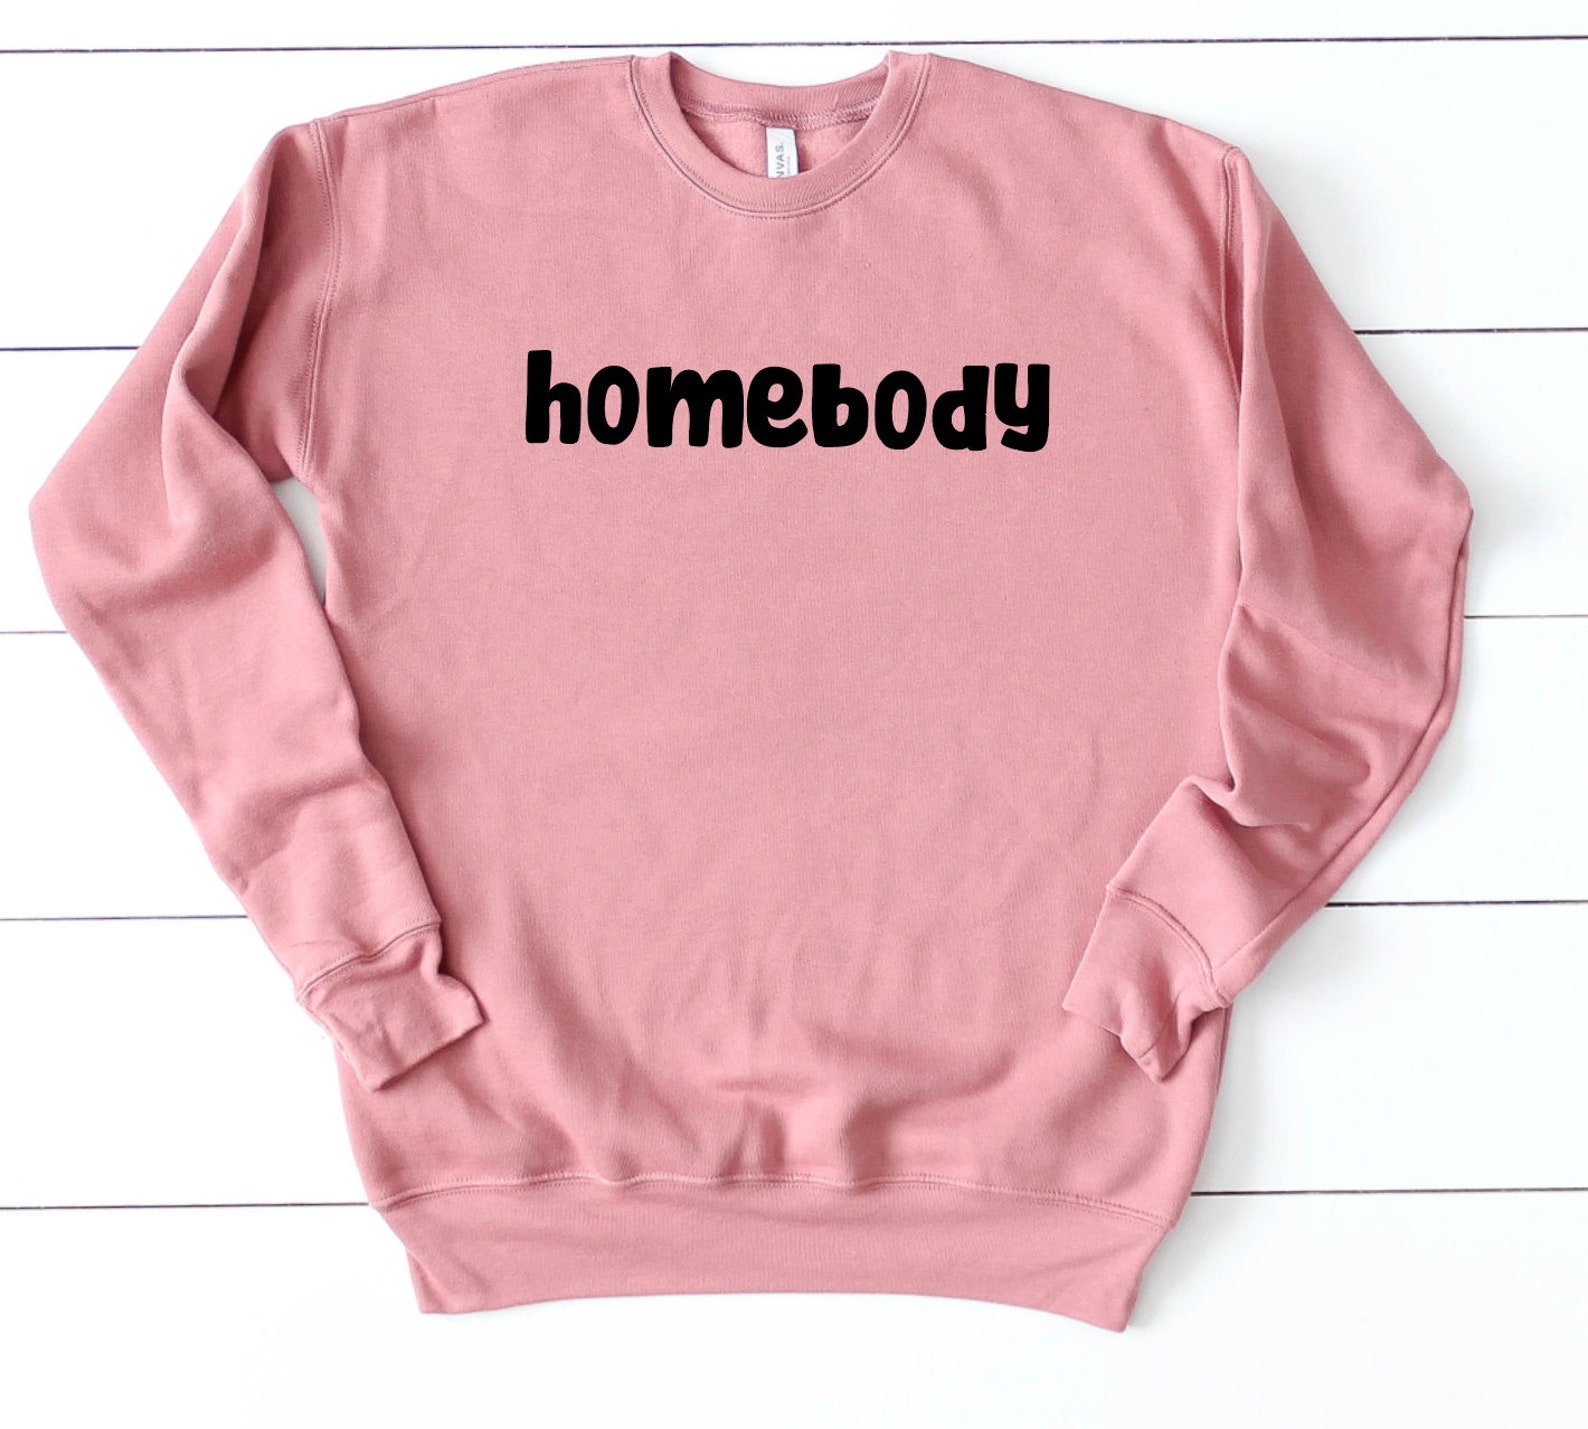 Homebody Sweatshirt / Homebody / Homebody Clothing / Homebody - Etsy